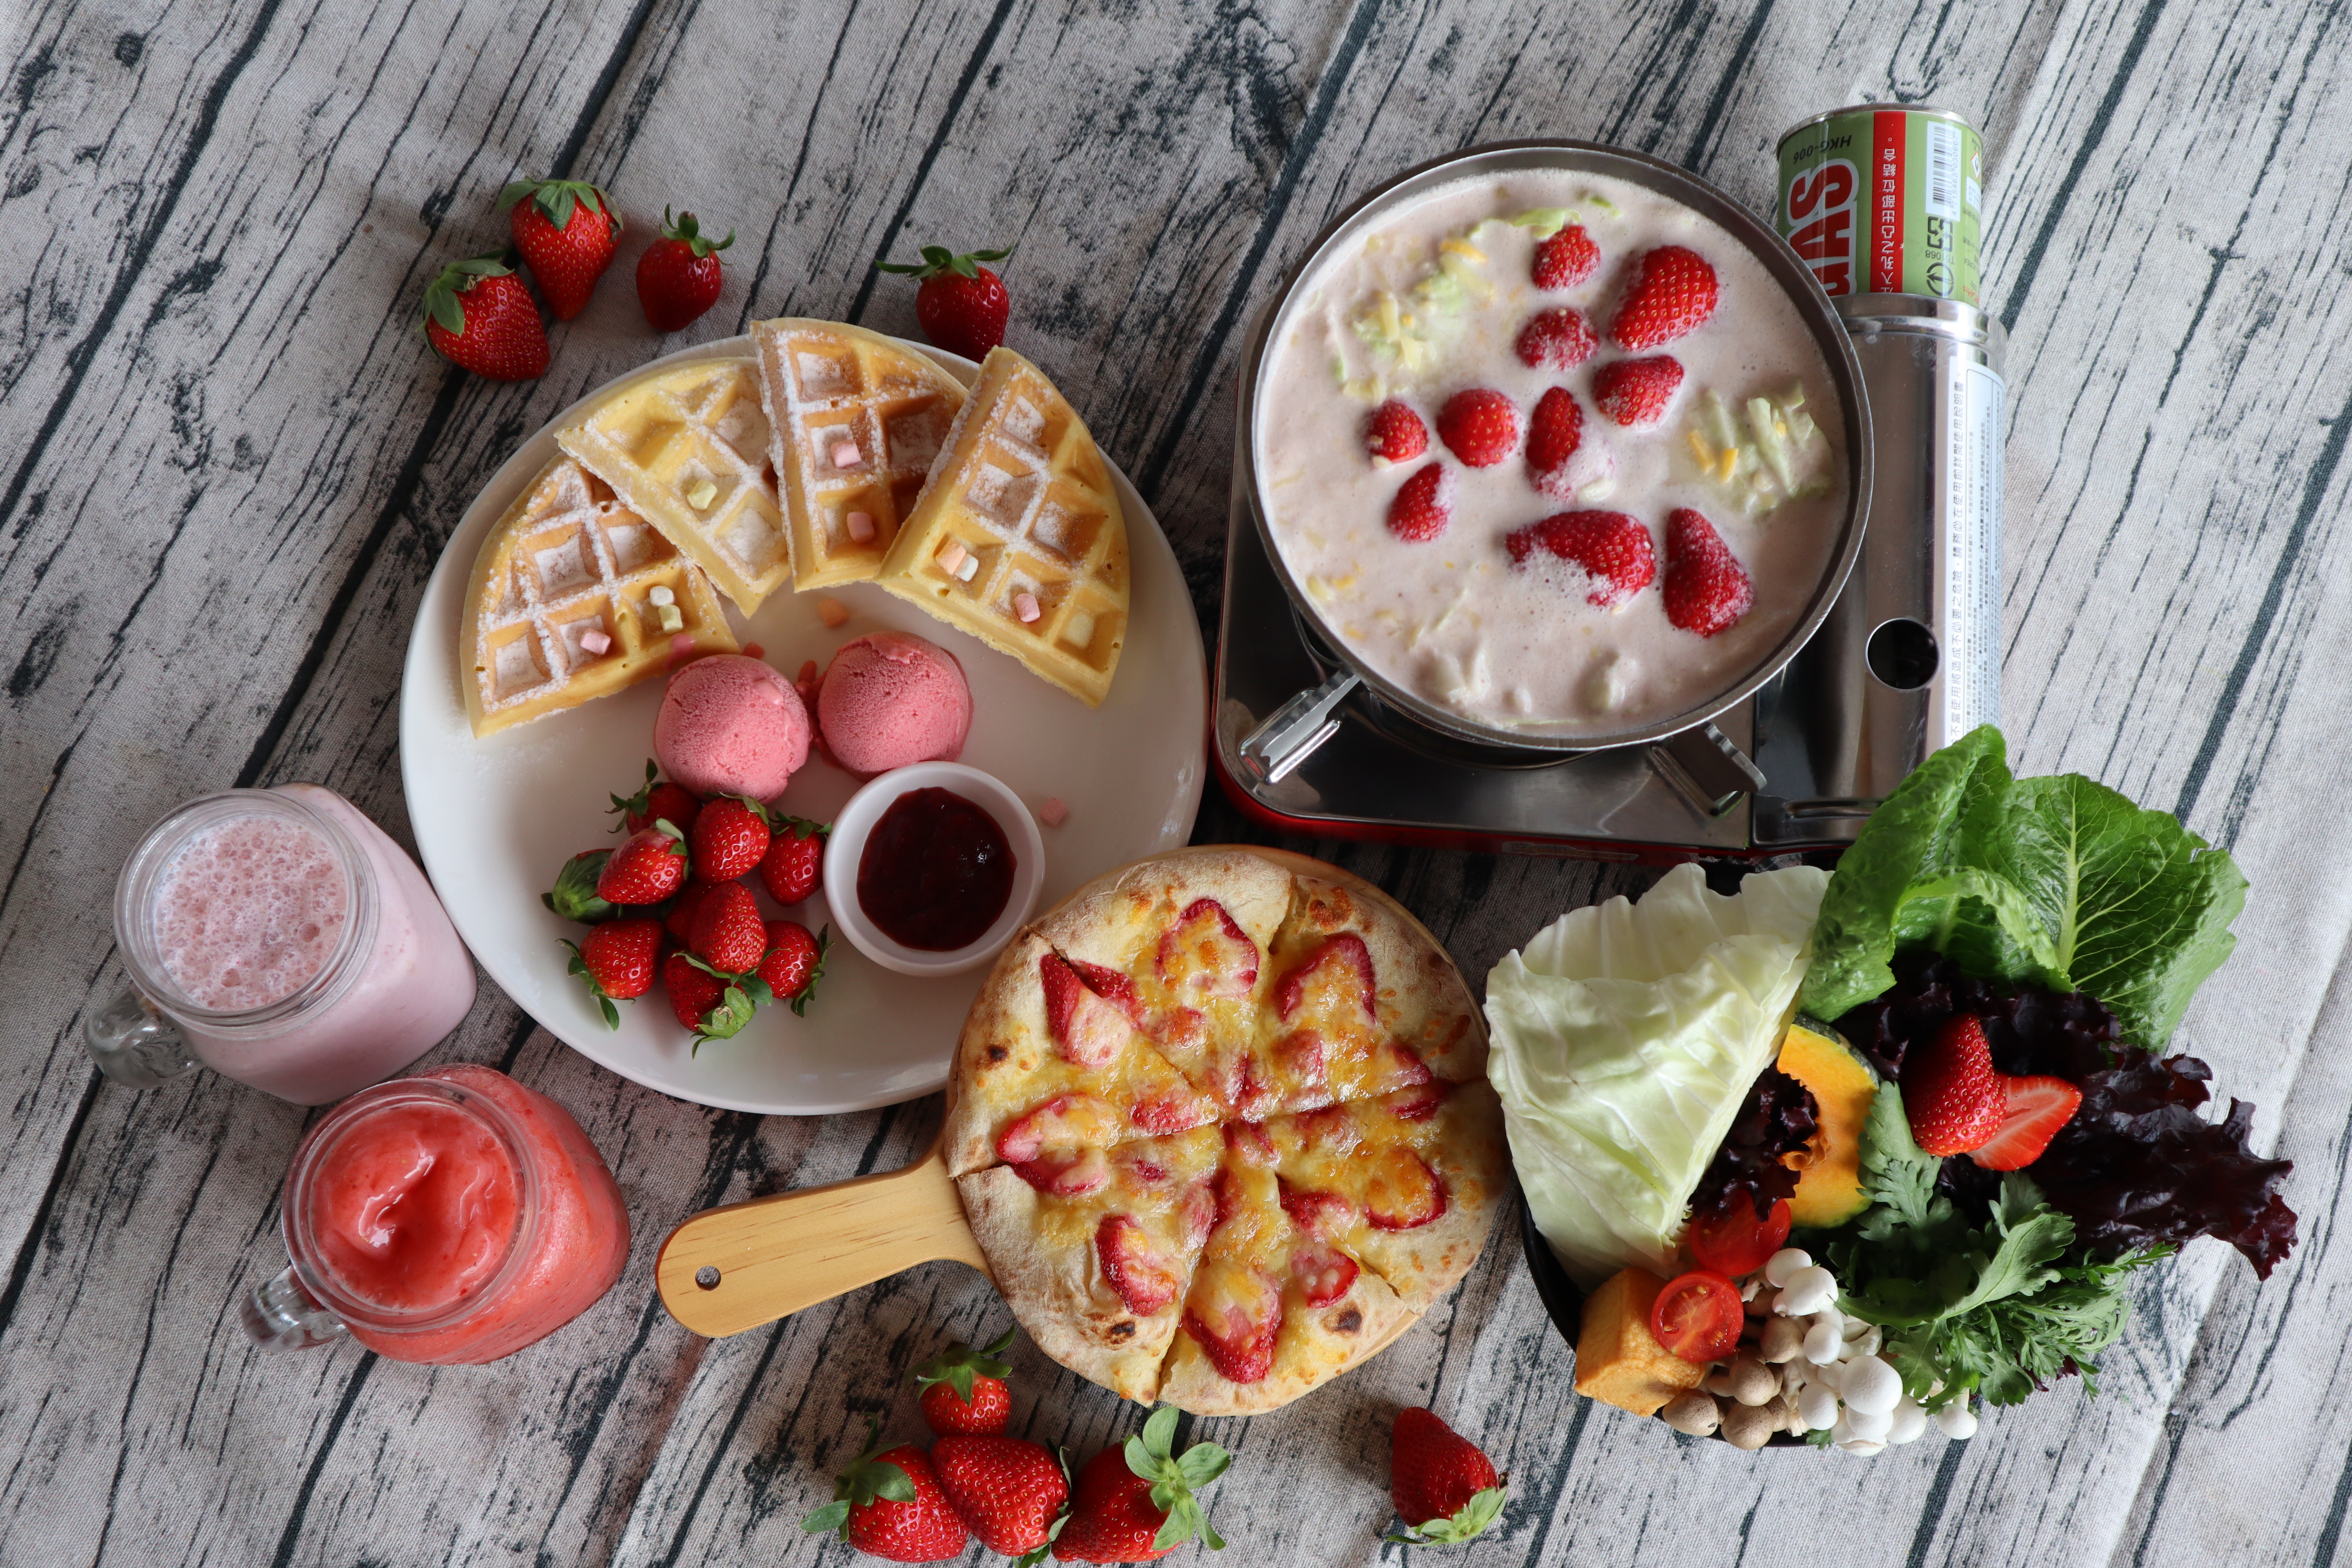 浪漫草莓甜點是農場招牌必點。